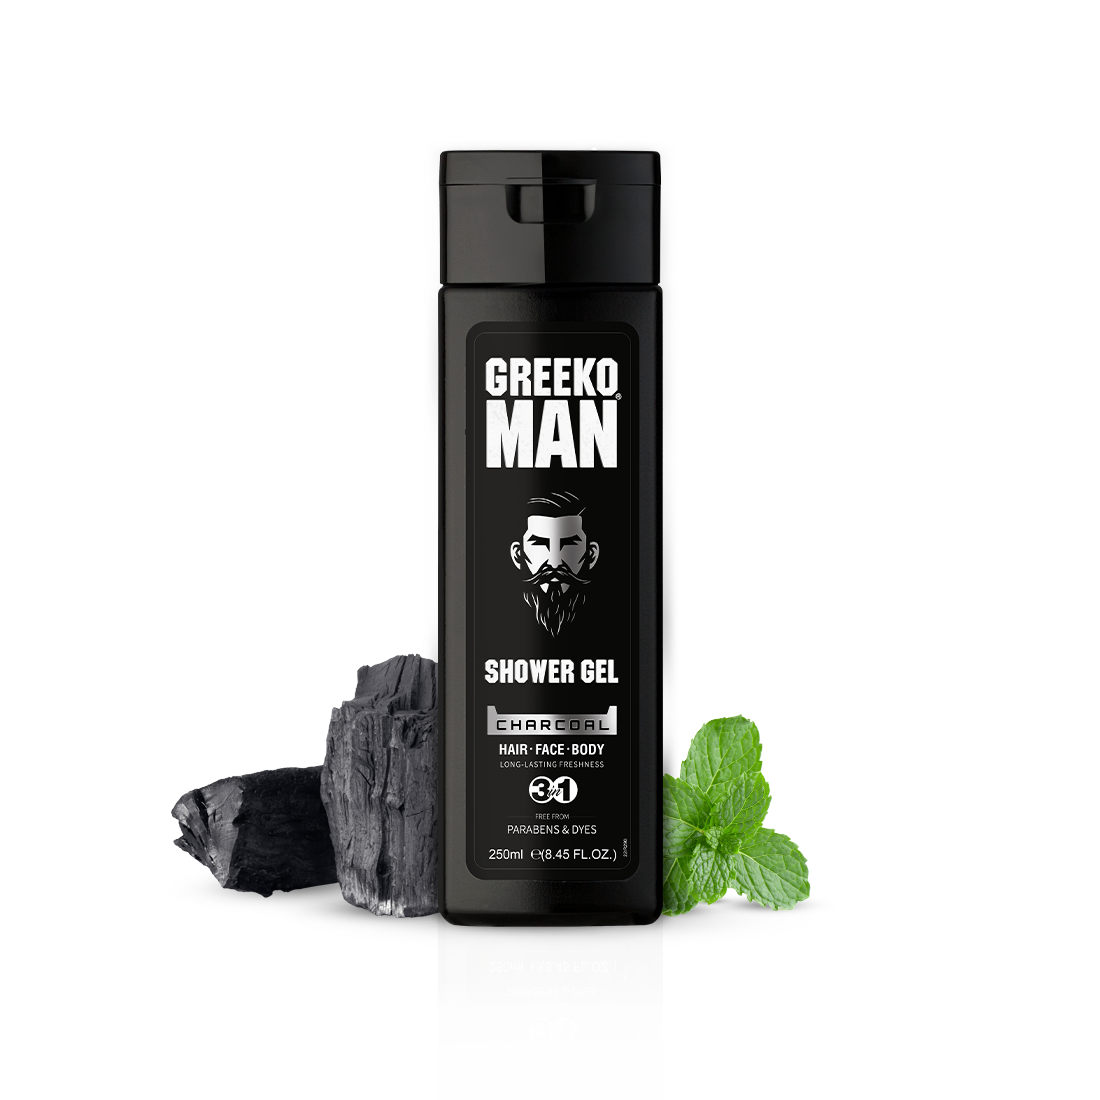 Greeko Man 3 in 1 Charcoal Shower Gel